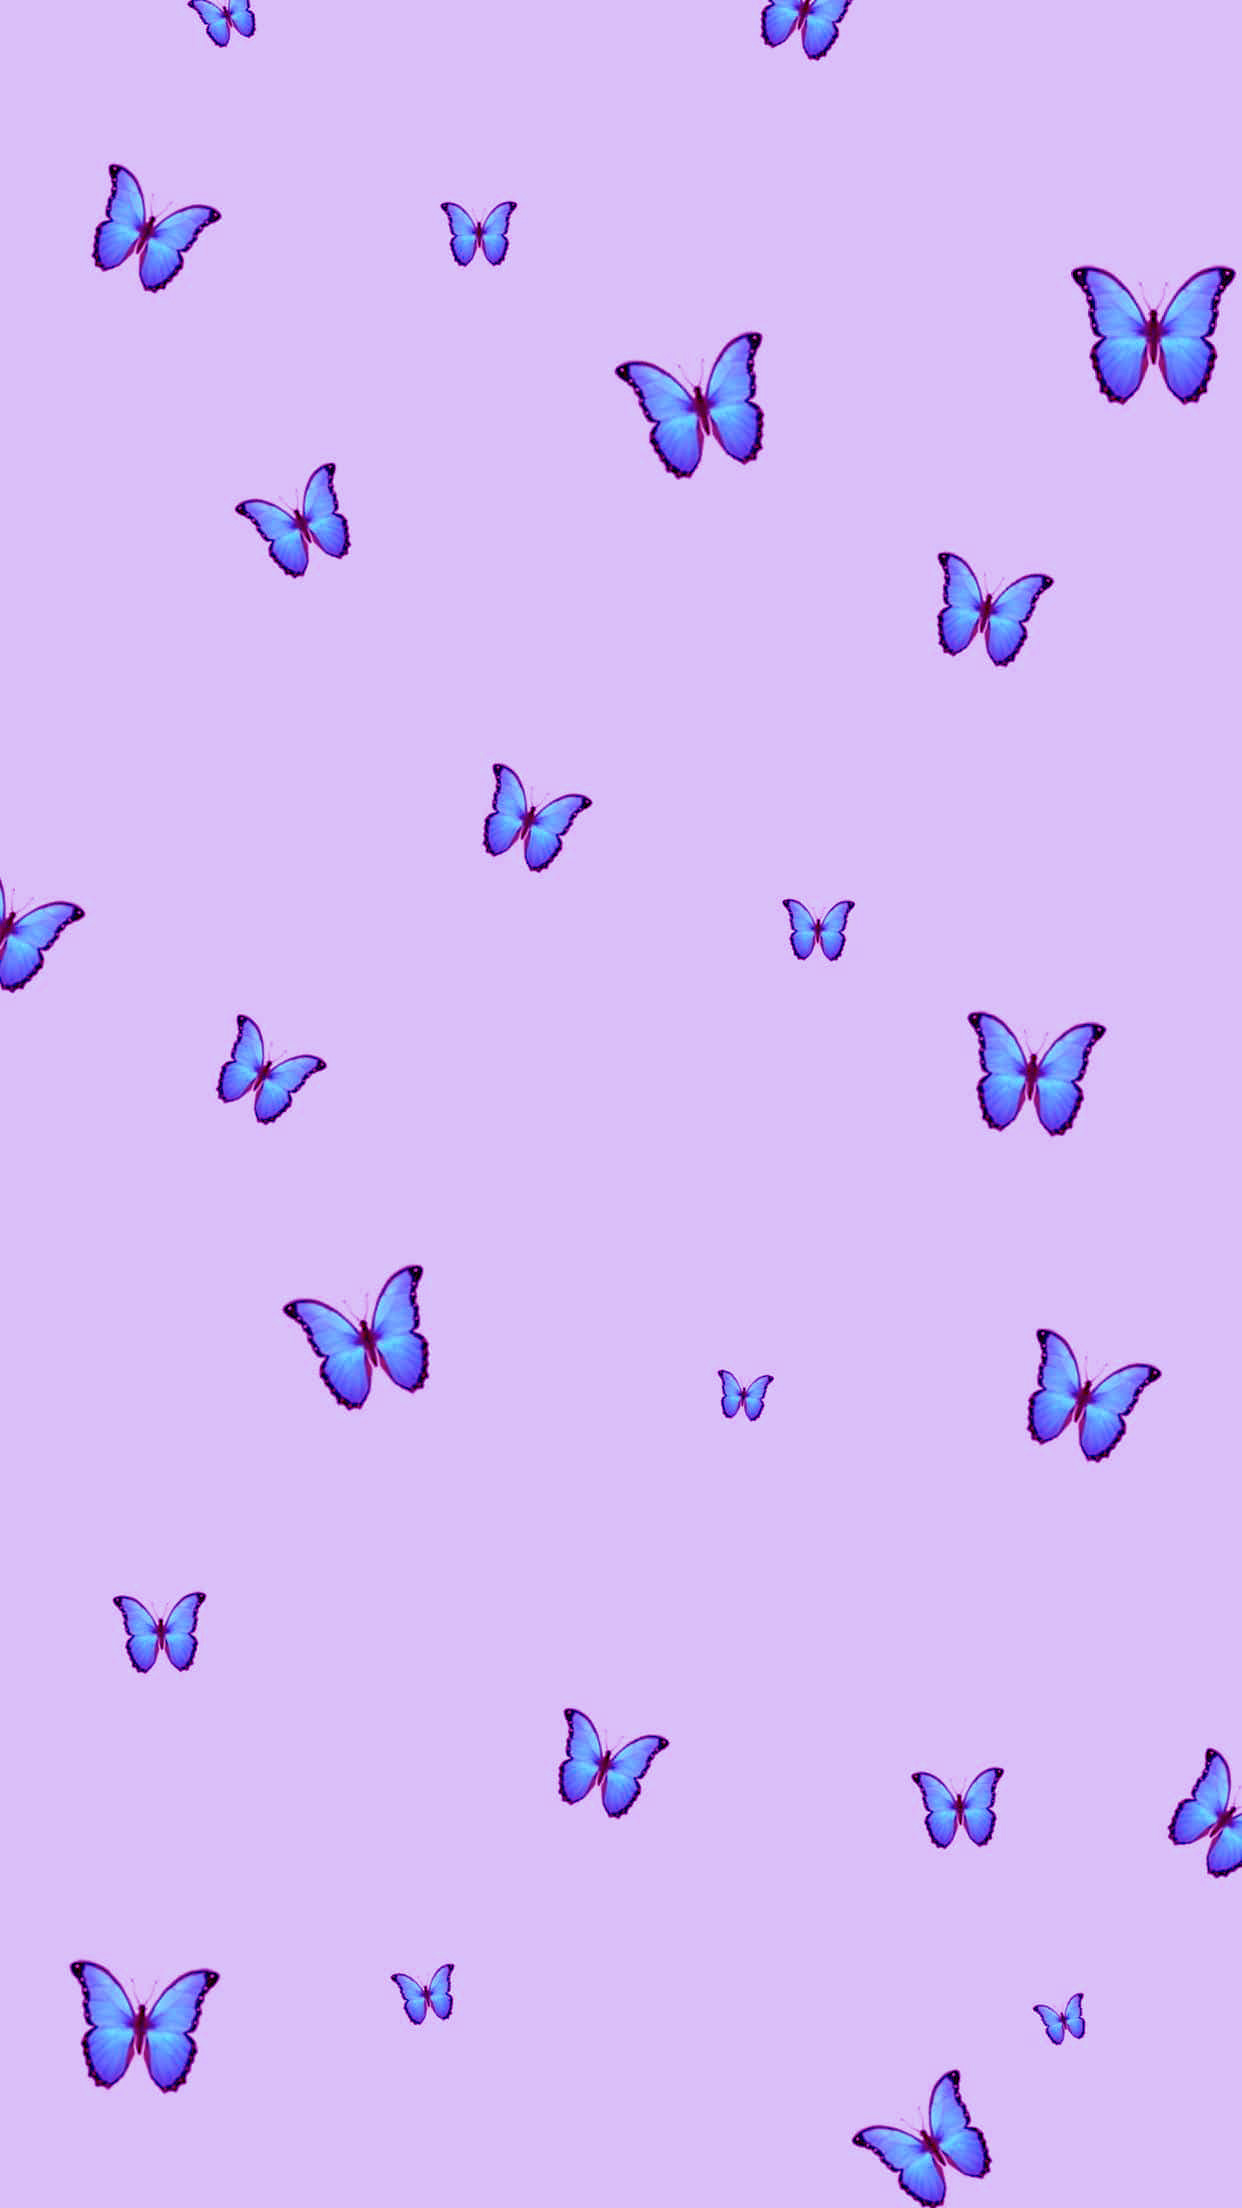 Blue Butterfly Wallpaper - EnJpg